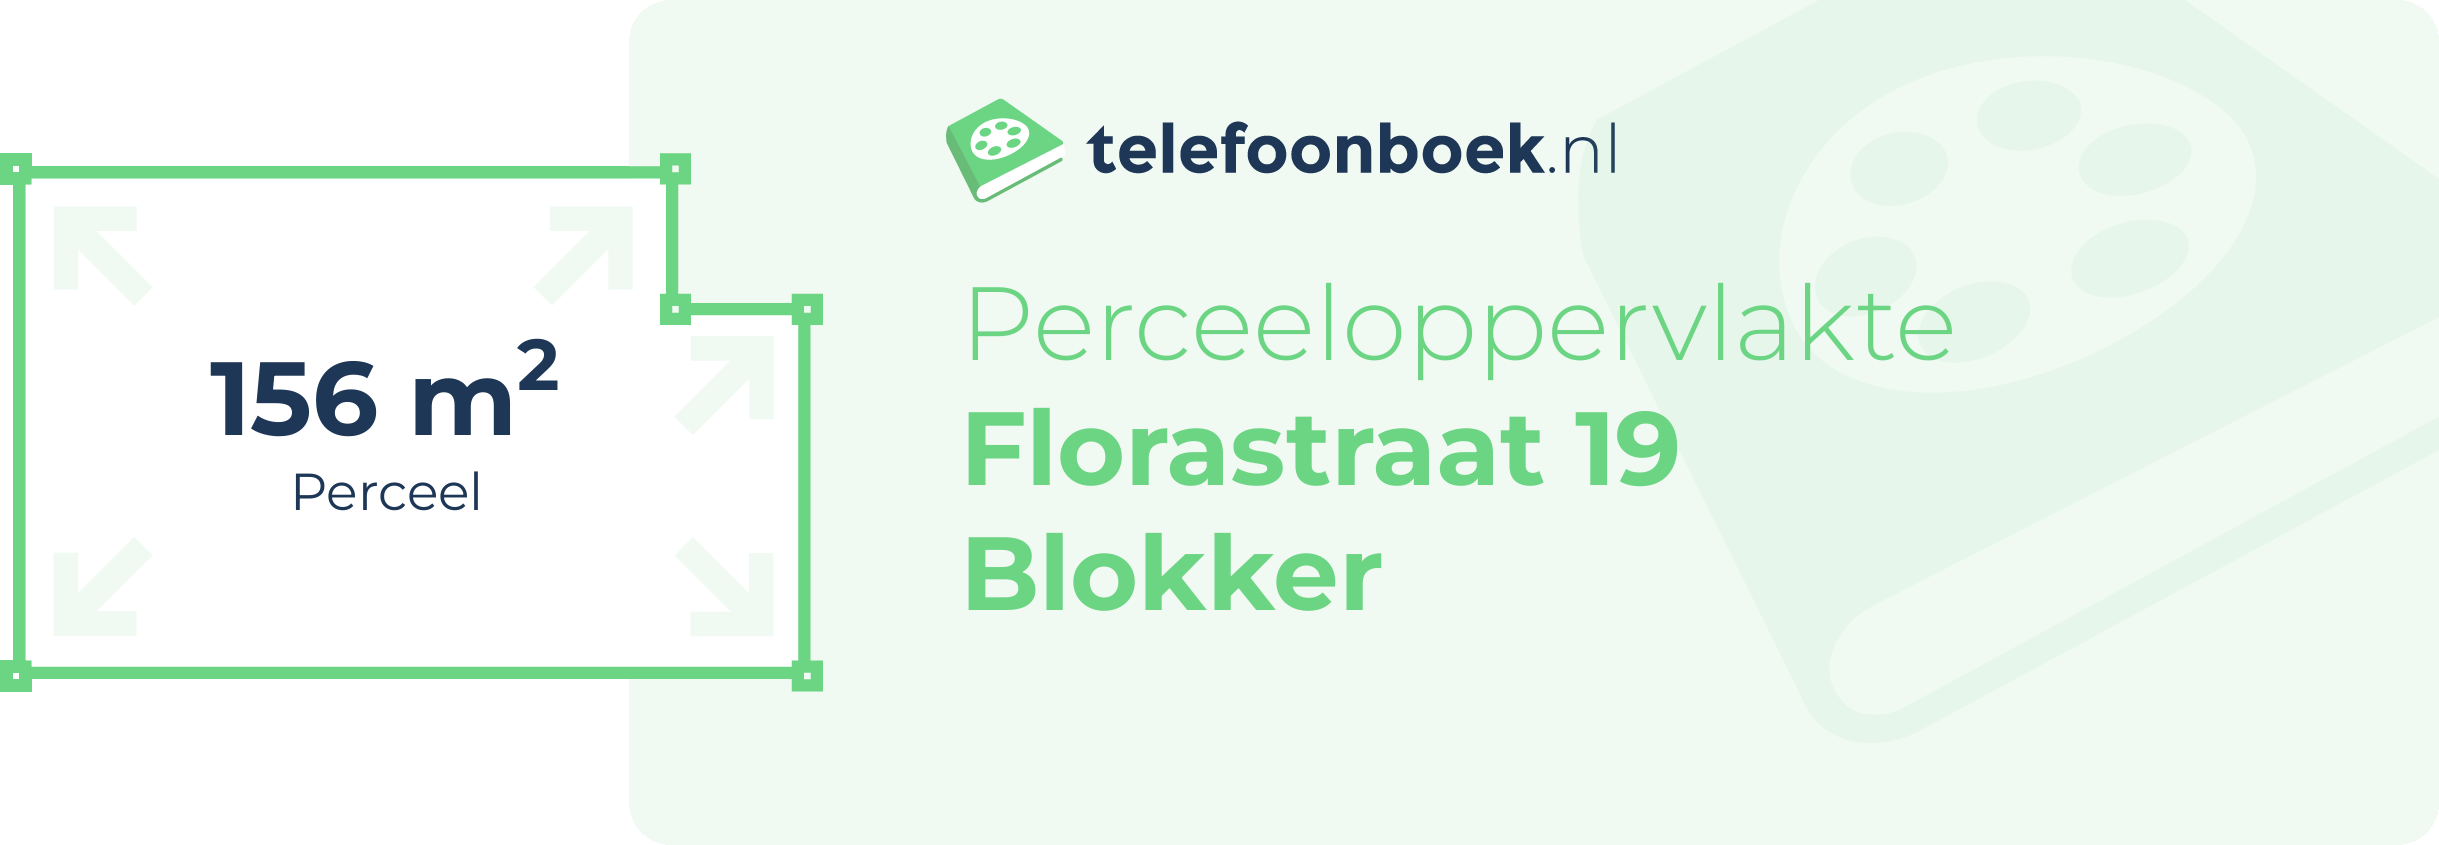 Perceeloppervlakte Florastraat 19 Blokker